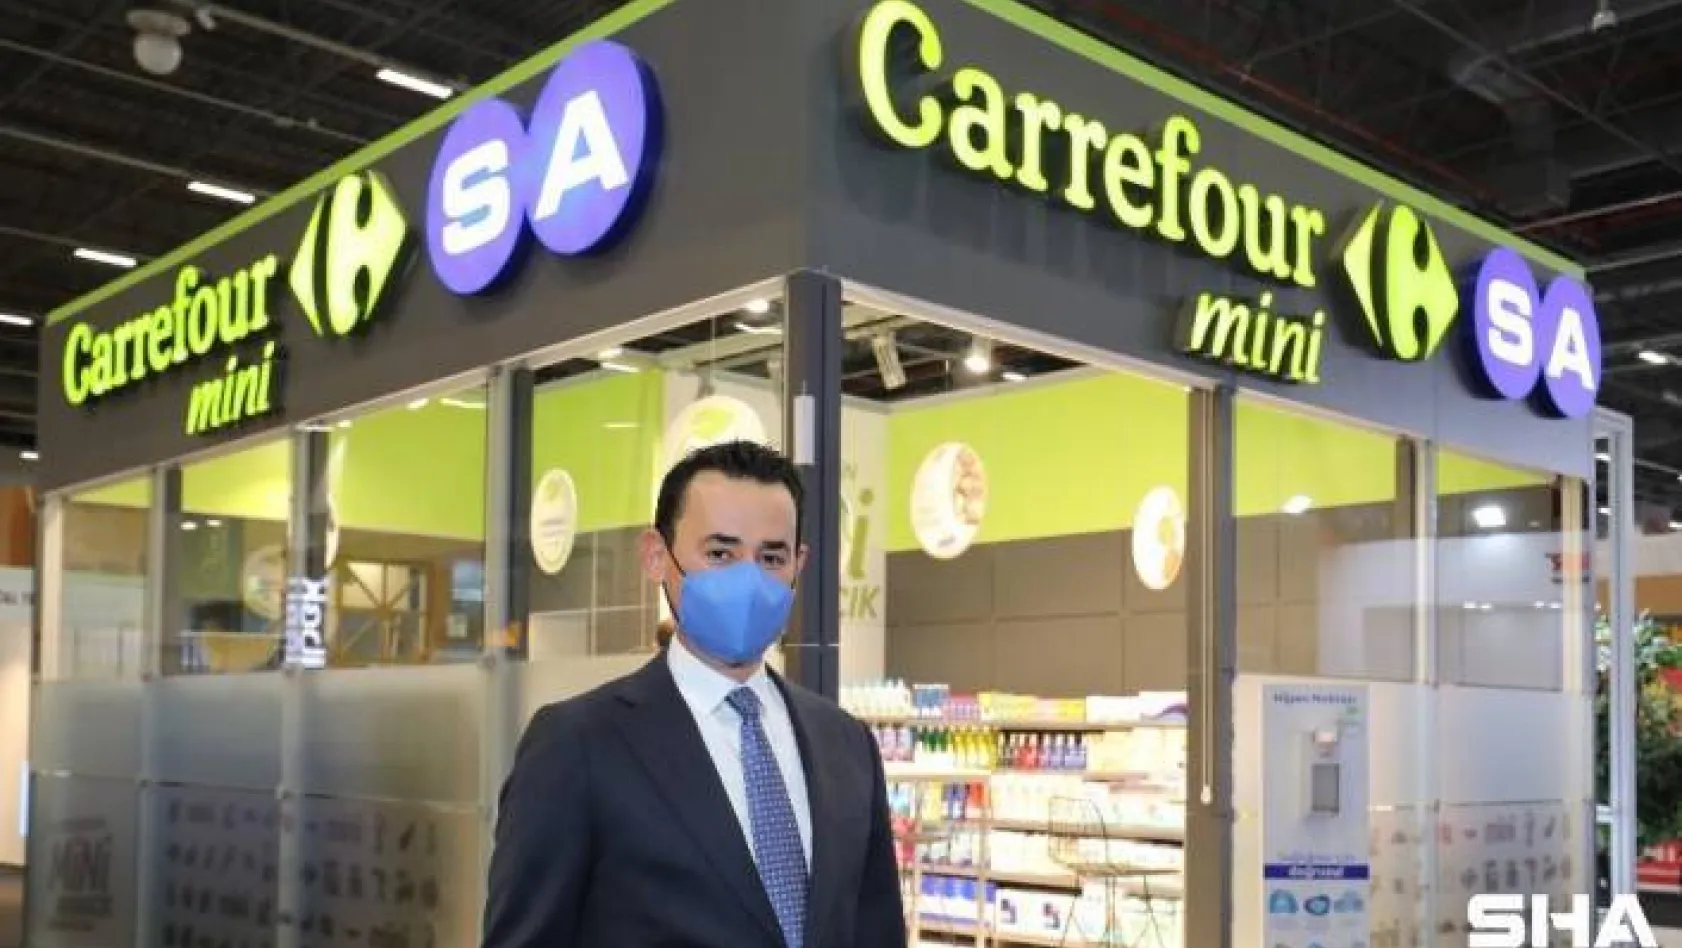 CarrefourSA 'franchise' sistemi başlattı